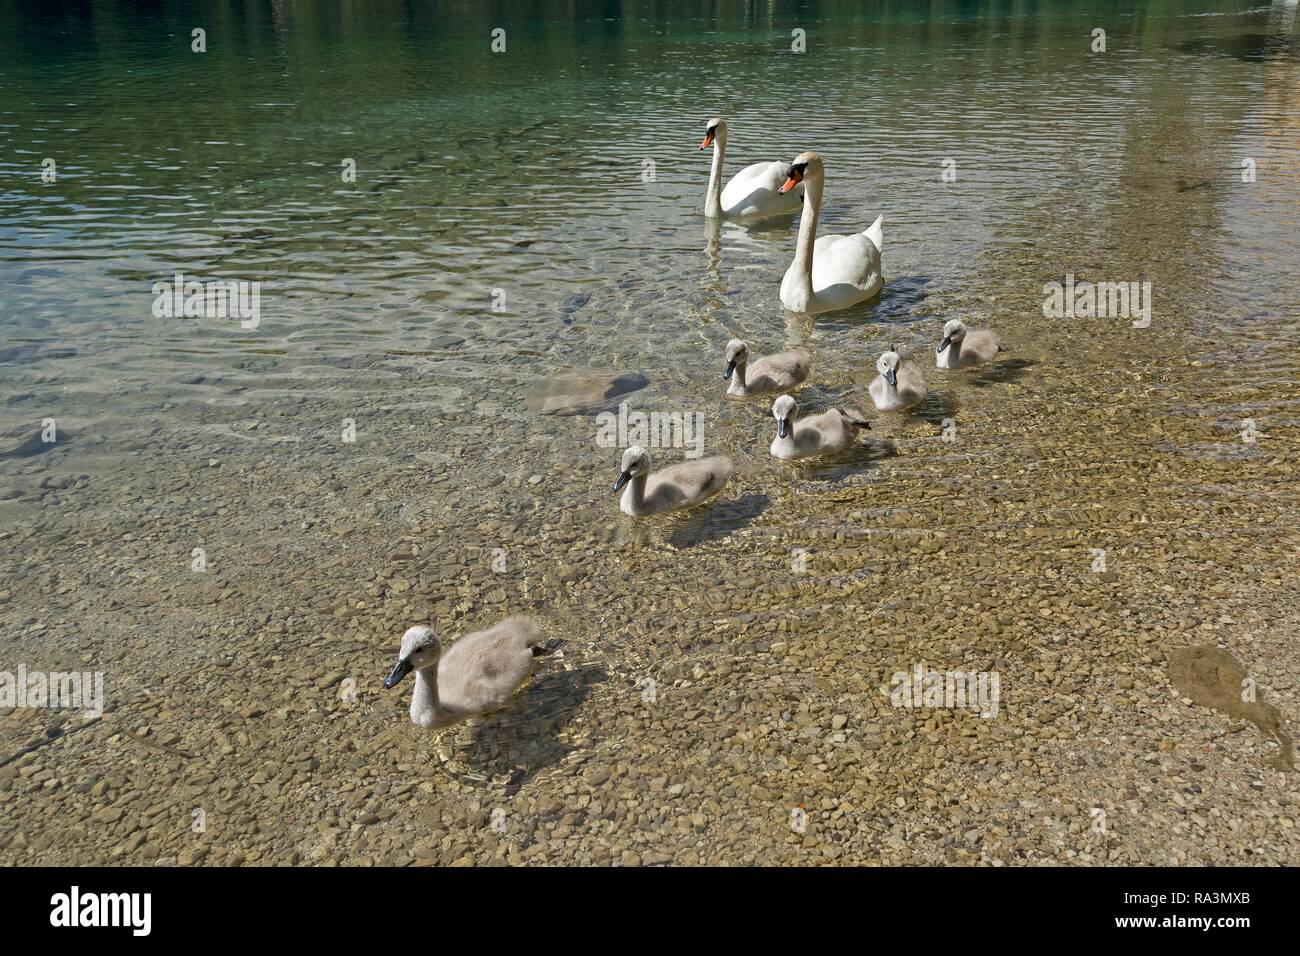 Le Cygne tuberculé (Cygnus olor) avec les poussins dans l'eau, la famille swan, lac Alpsee, Hohenschwangau, Allgäu, Bavière, Allemagne Banque D'Images